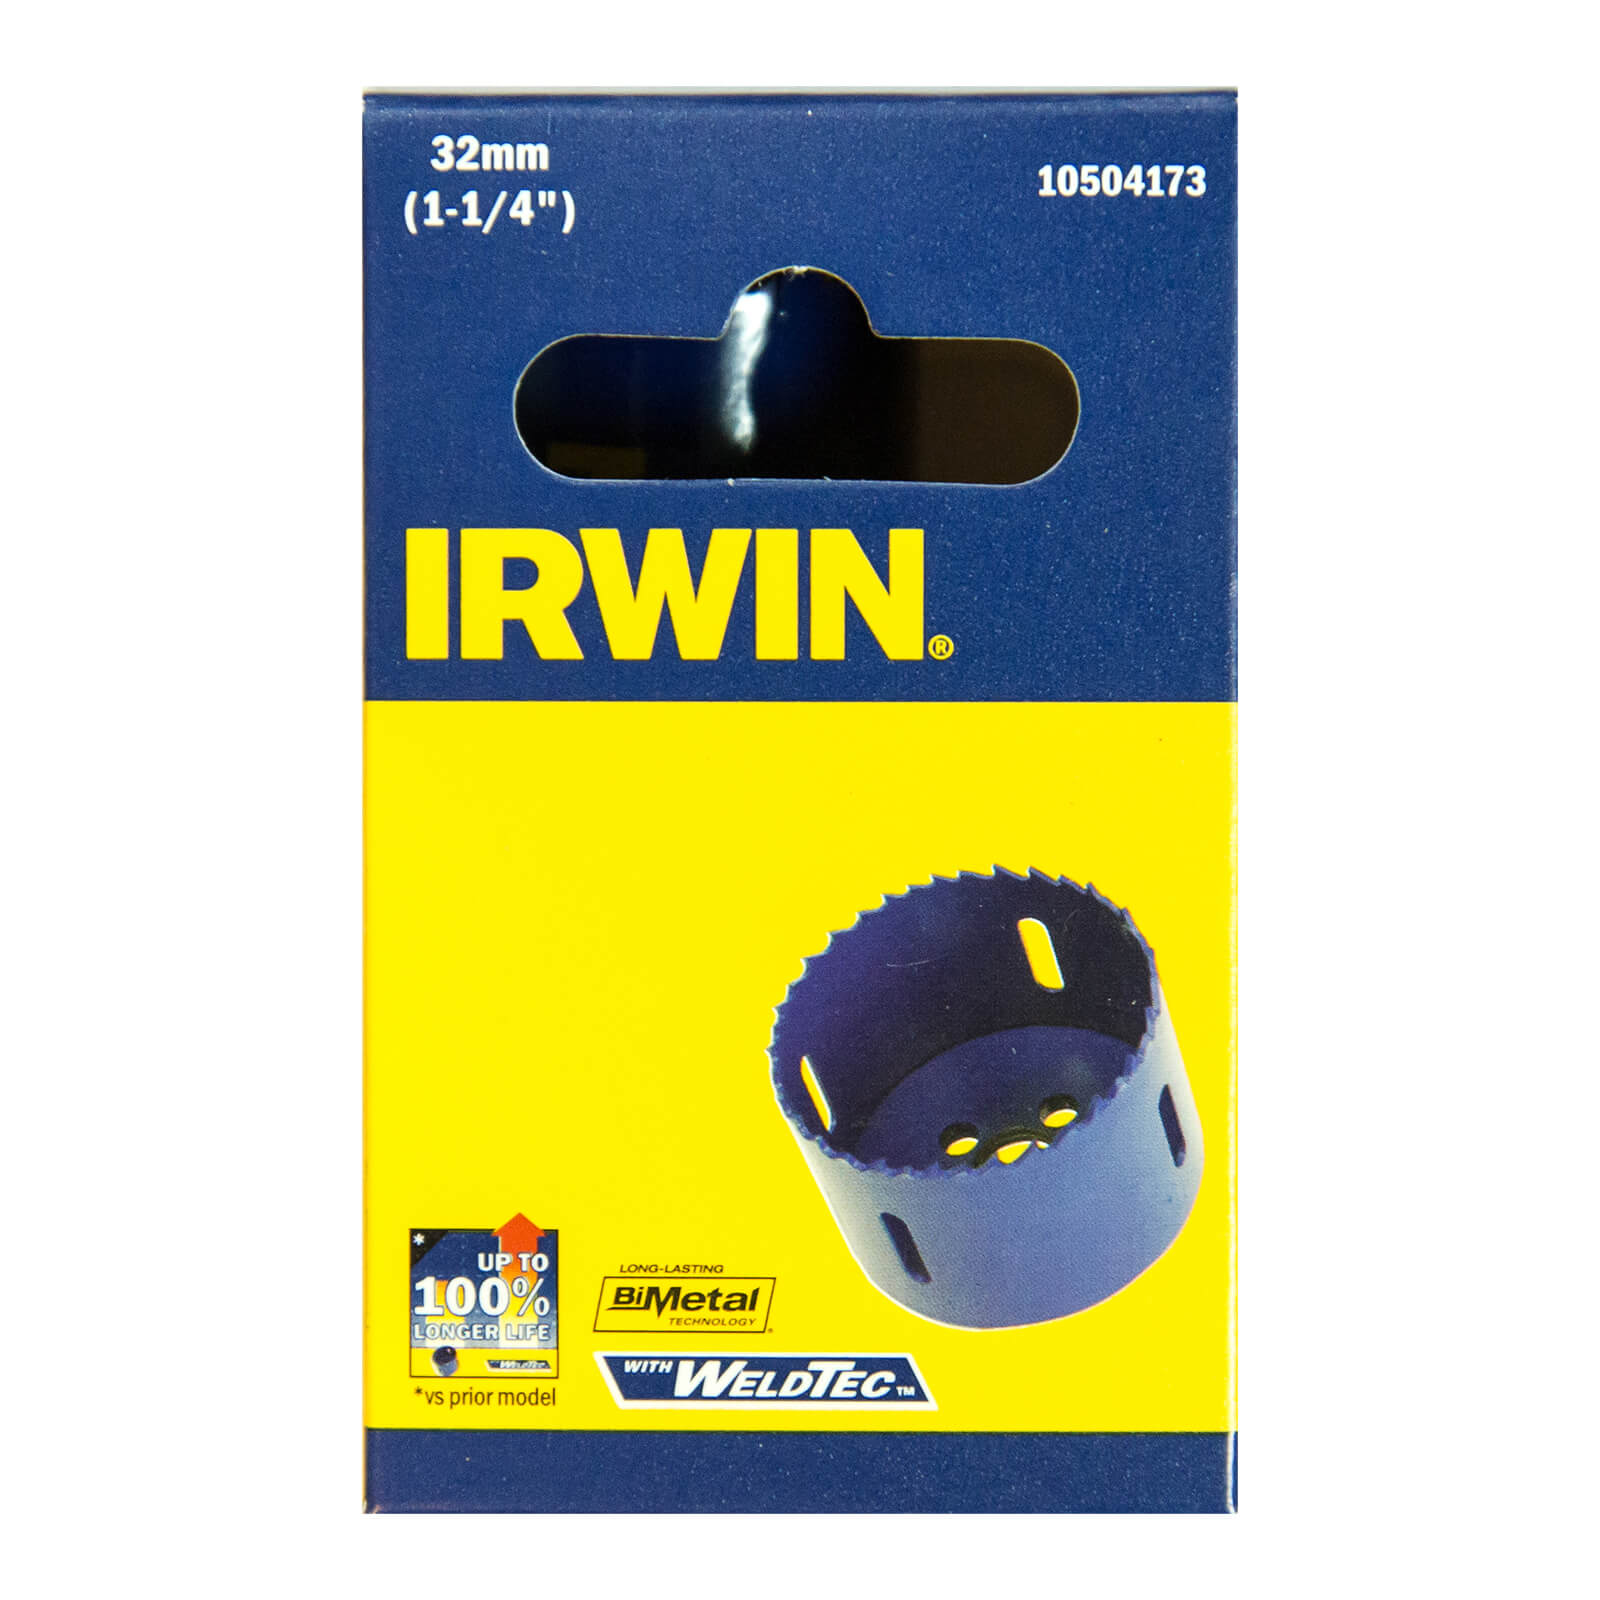 IRWIN Bi-Metal Hole Saw - 32mm